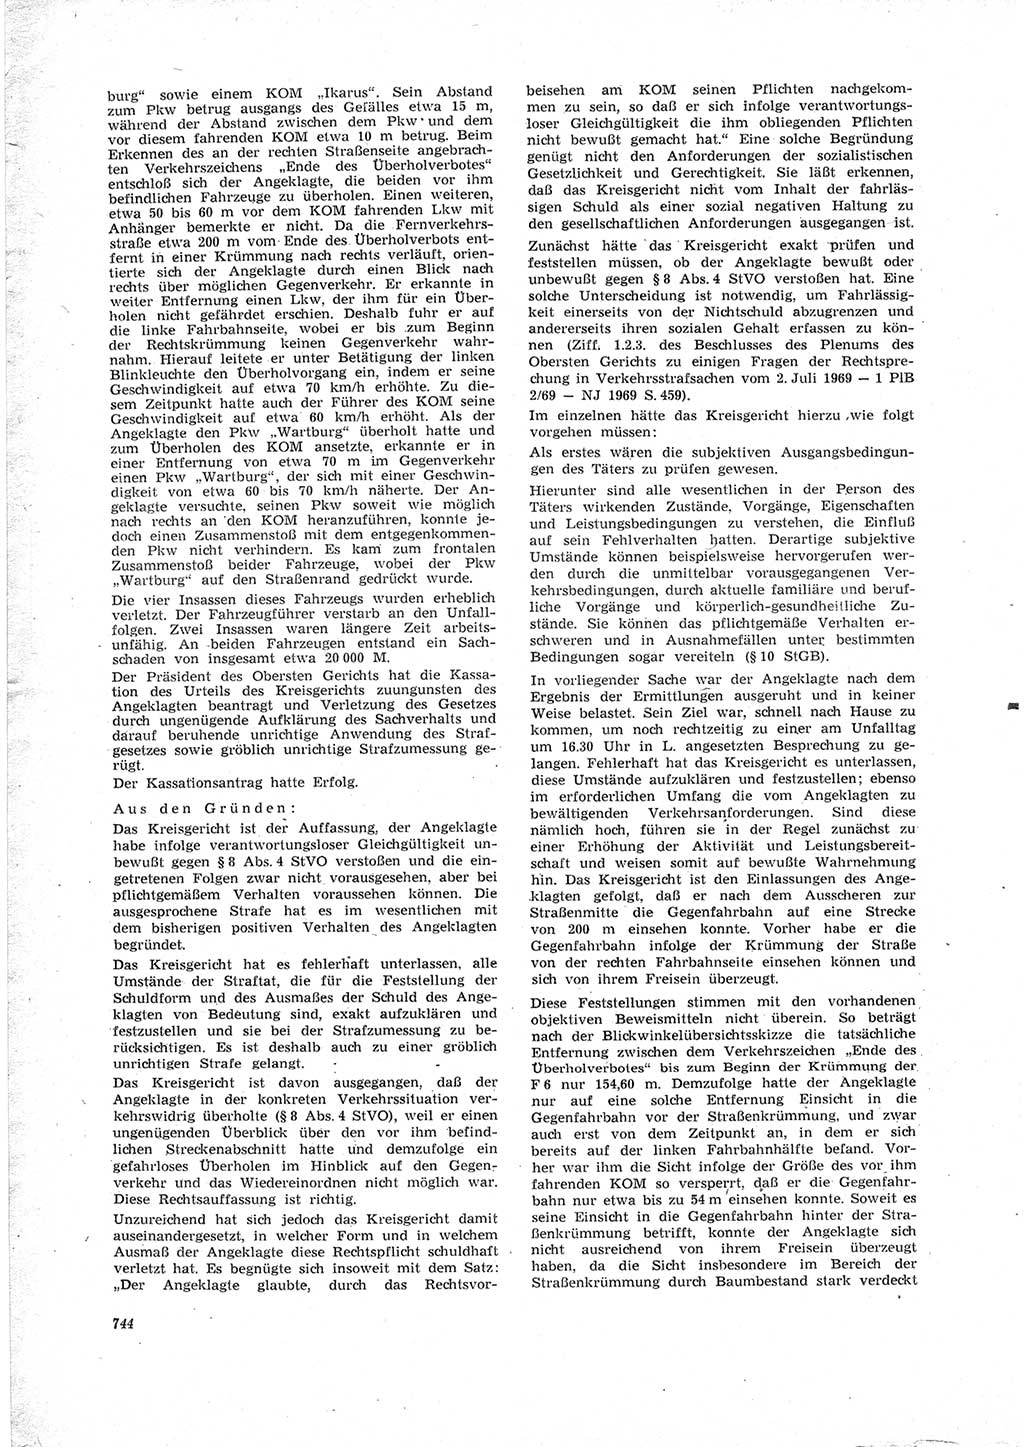 Neue Justiz (NJ), Zeitschrift für Recht und Rechtswissenschaft [Deutsche Demokratische Republik (DDR)], 23. Jahrgang 1969, Seite 744 (NJ DDR 1969, S. 744)